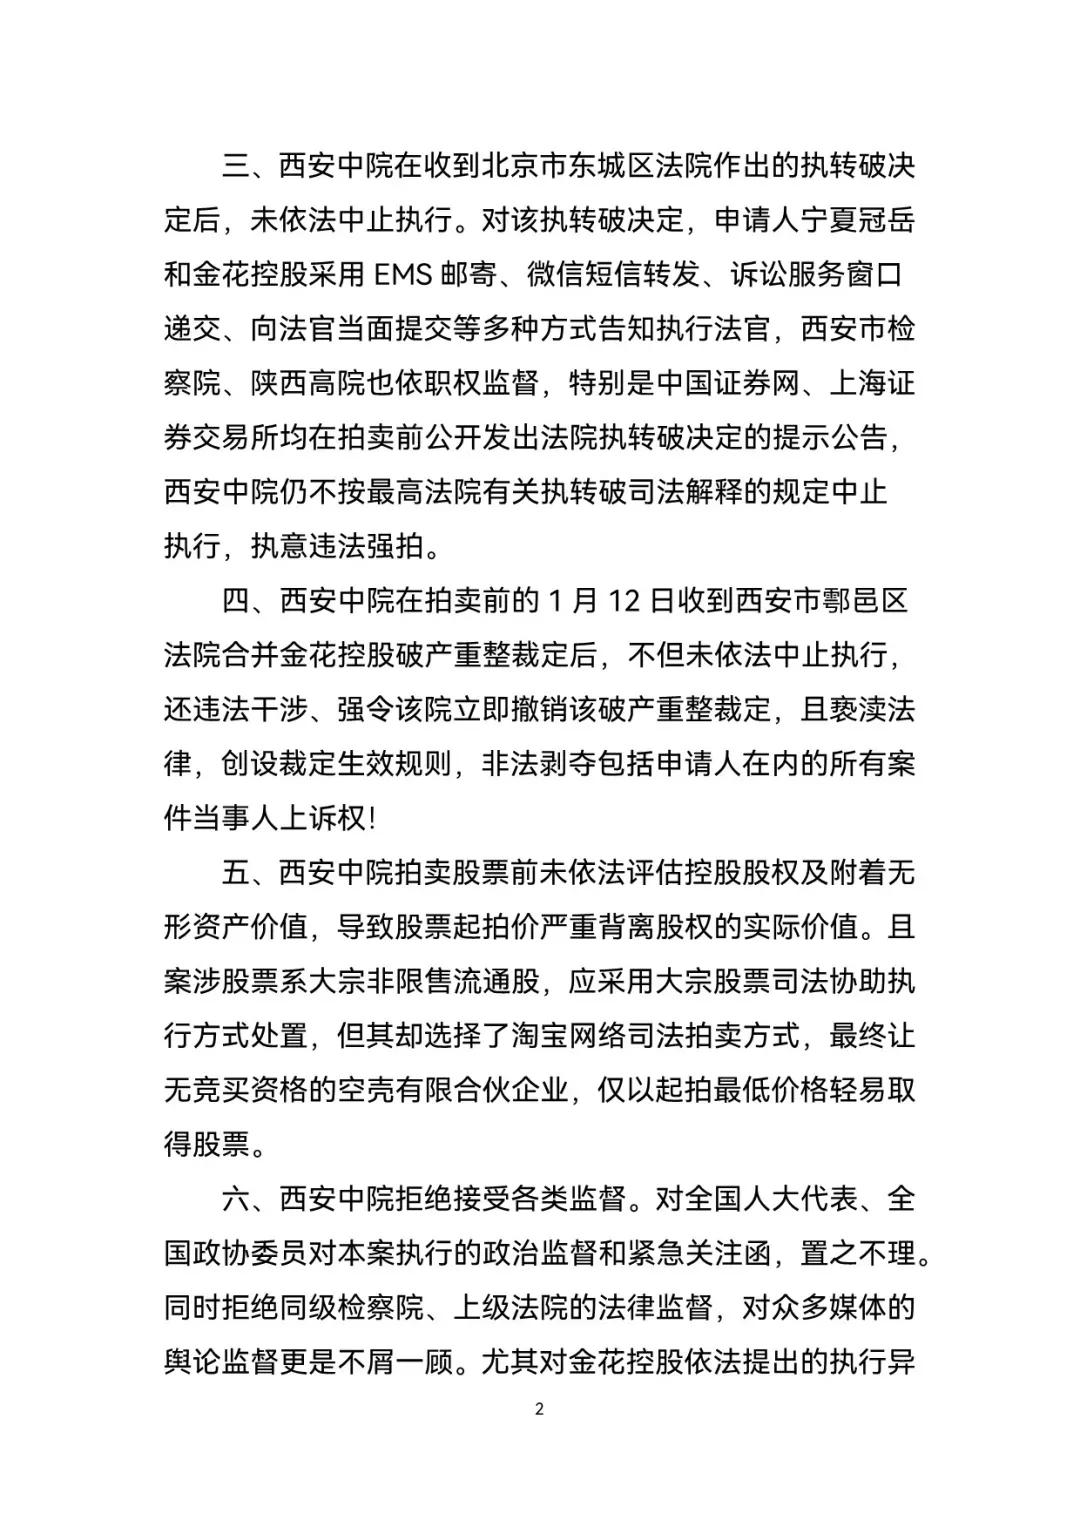 金花控股集团发布声明称，西安中院“违法拍卖”其控股企业股权